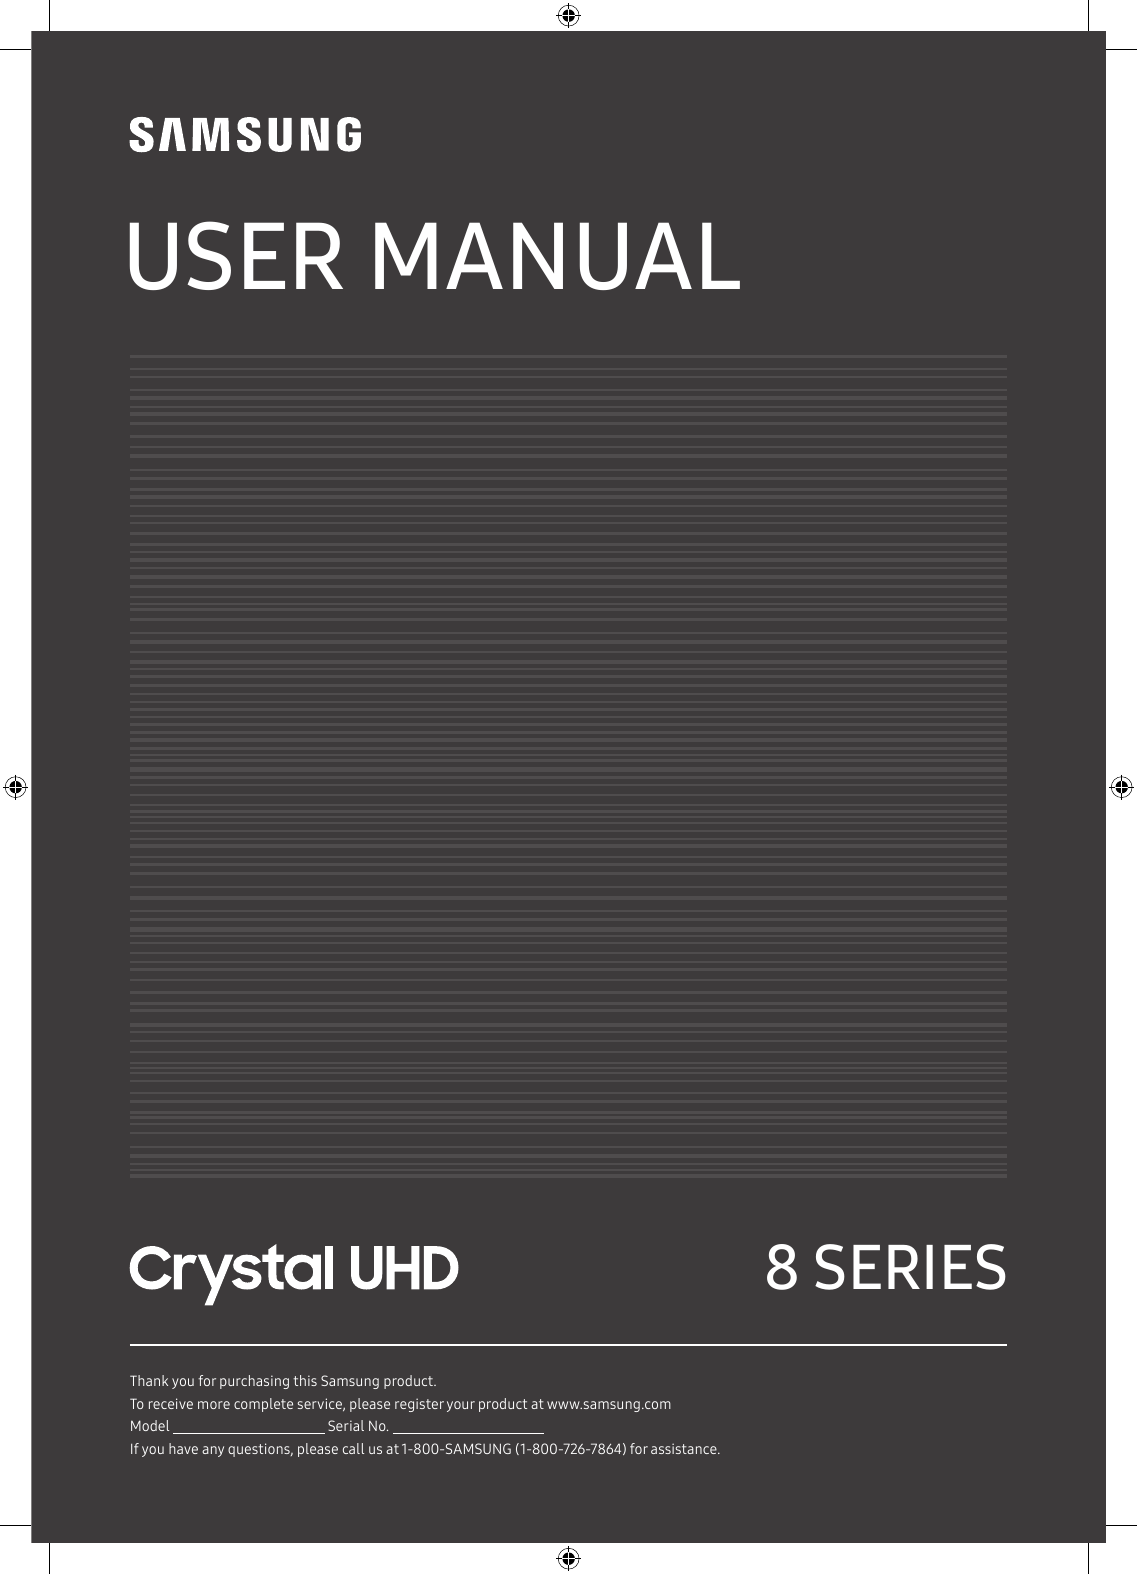 checksoft user manual